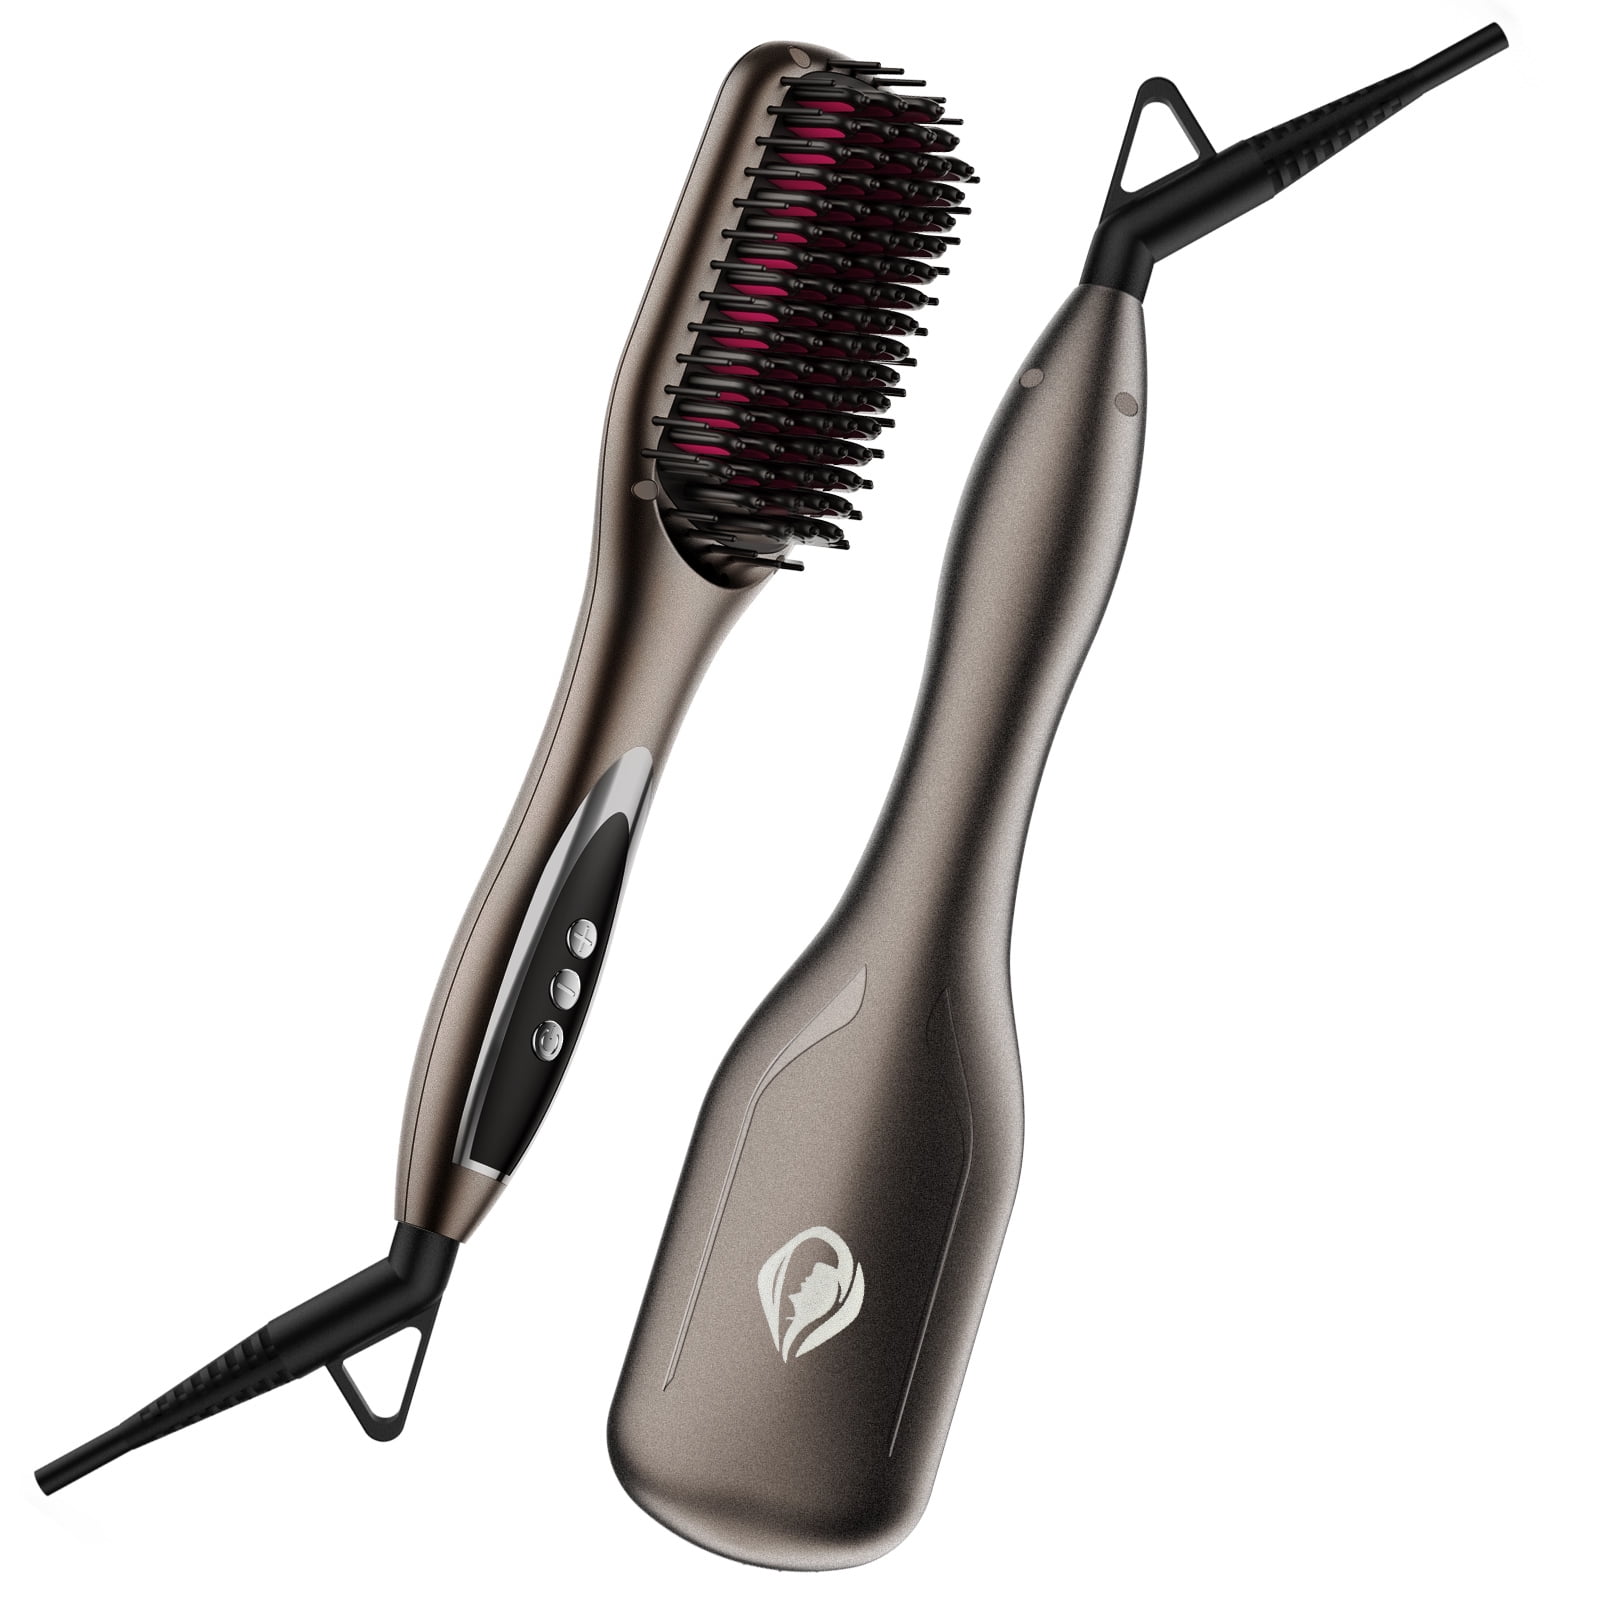 TYMO RING Hair Straightener Brush Black  Hair Straightening Iron with  Builtin Comb 20s Fast Heating  5 Temp Settings  AntiScald  Walmartcom